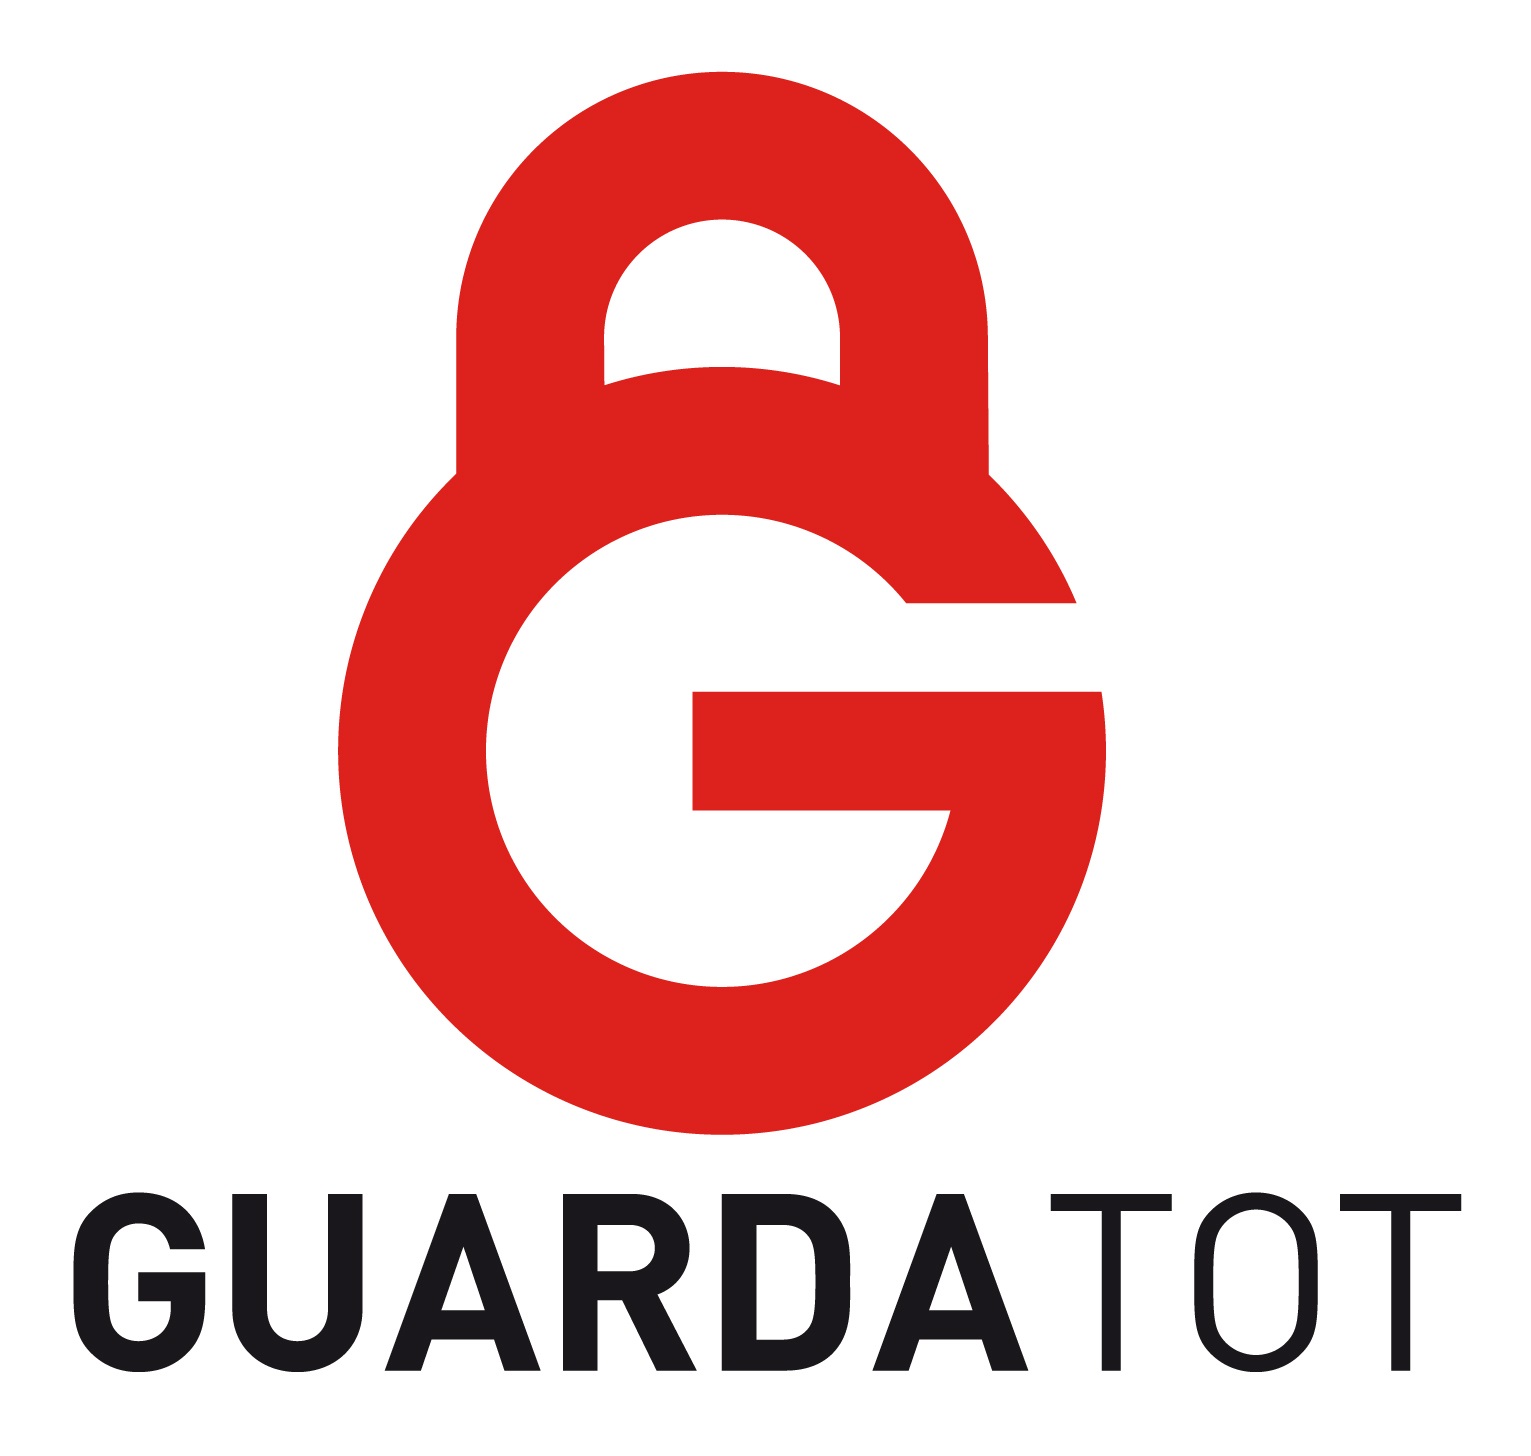 GUARDATOT logo